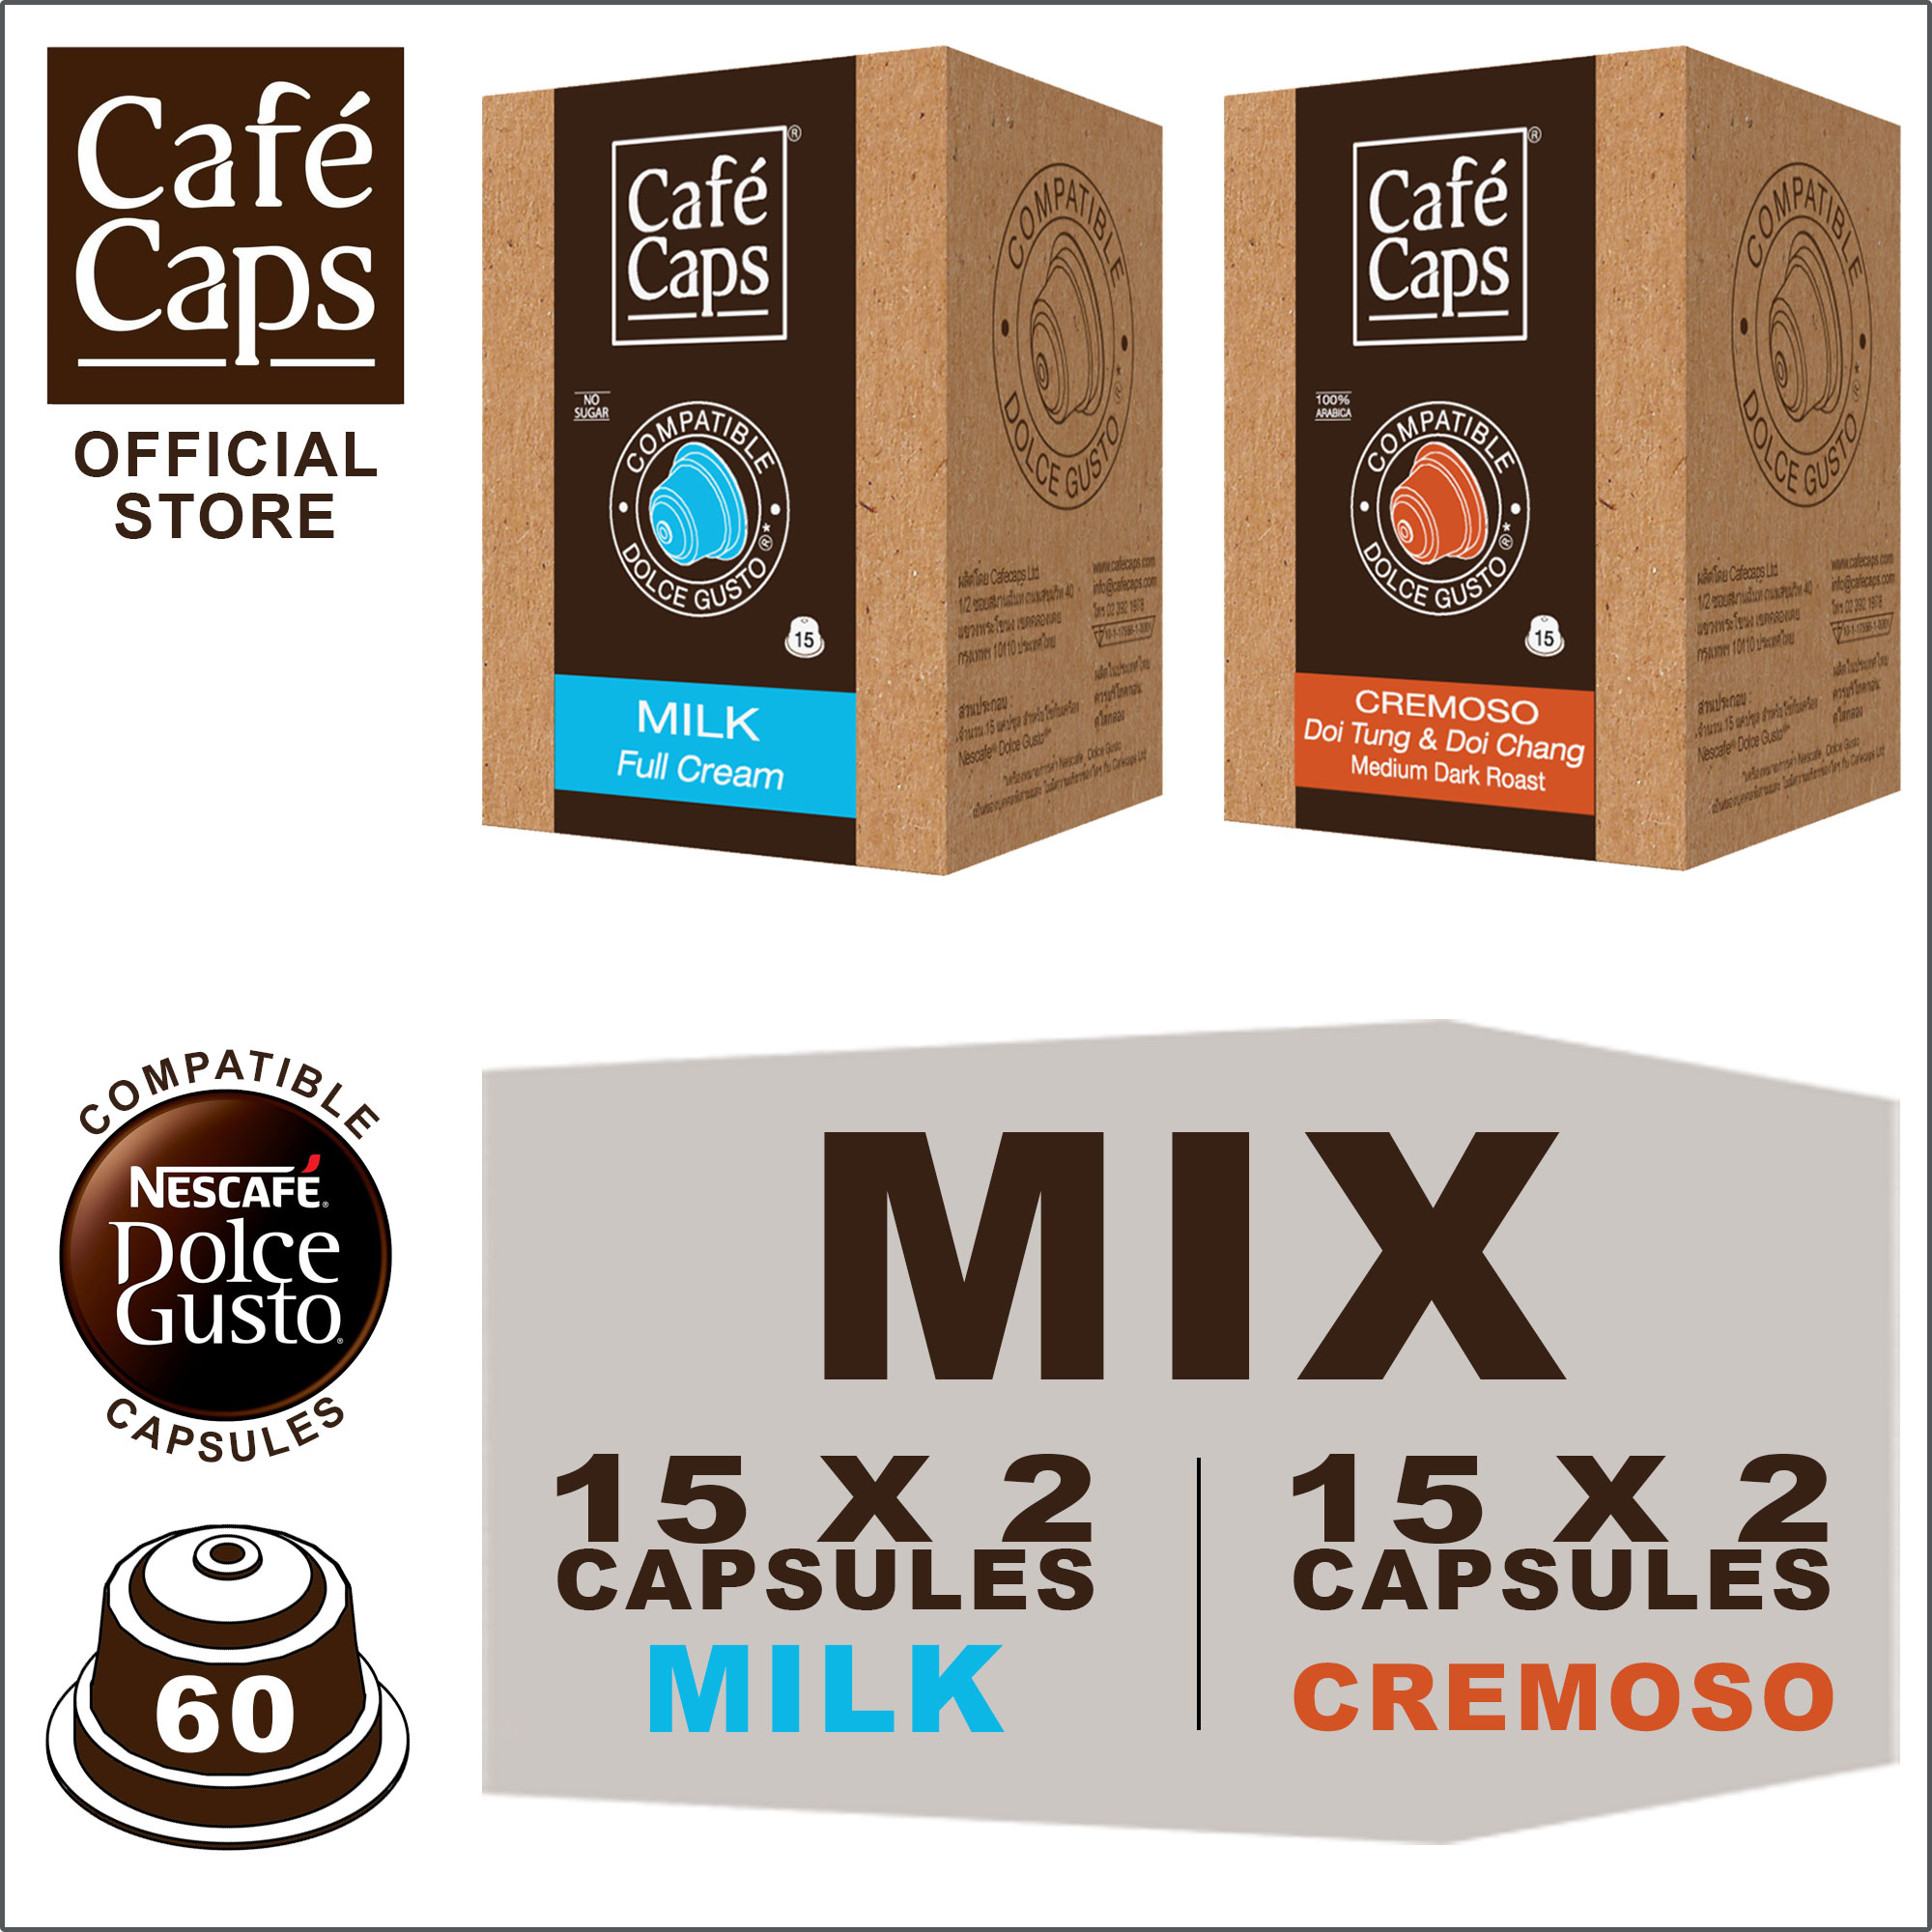 ภาพอธิบายเพิ่มเติมของ Cafecaps - Coffee Dolce Gusto MIX Compatible capsules of Milk (2 Box X15 แคปซูล) & Cremoso (2 กล่อง X15 แคปซูล) รวม 60 แคปซูล - Dolce Gusto Coffee capsule compatible แคปซูลกาแฟที่ กาแฟสไตล์อิตาเลียนทั่วไป ส่วนผสมของโรบัสต้าและอาราบิก้า